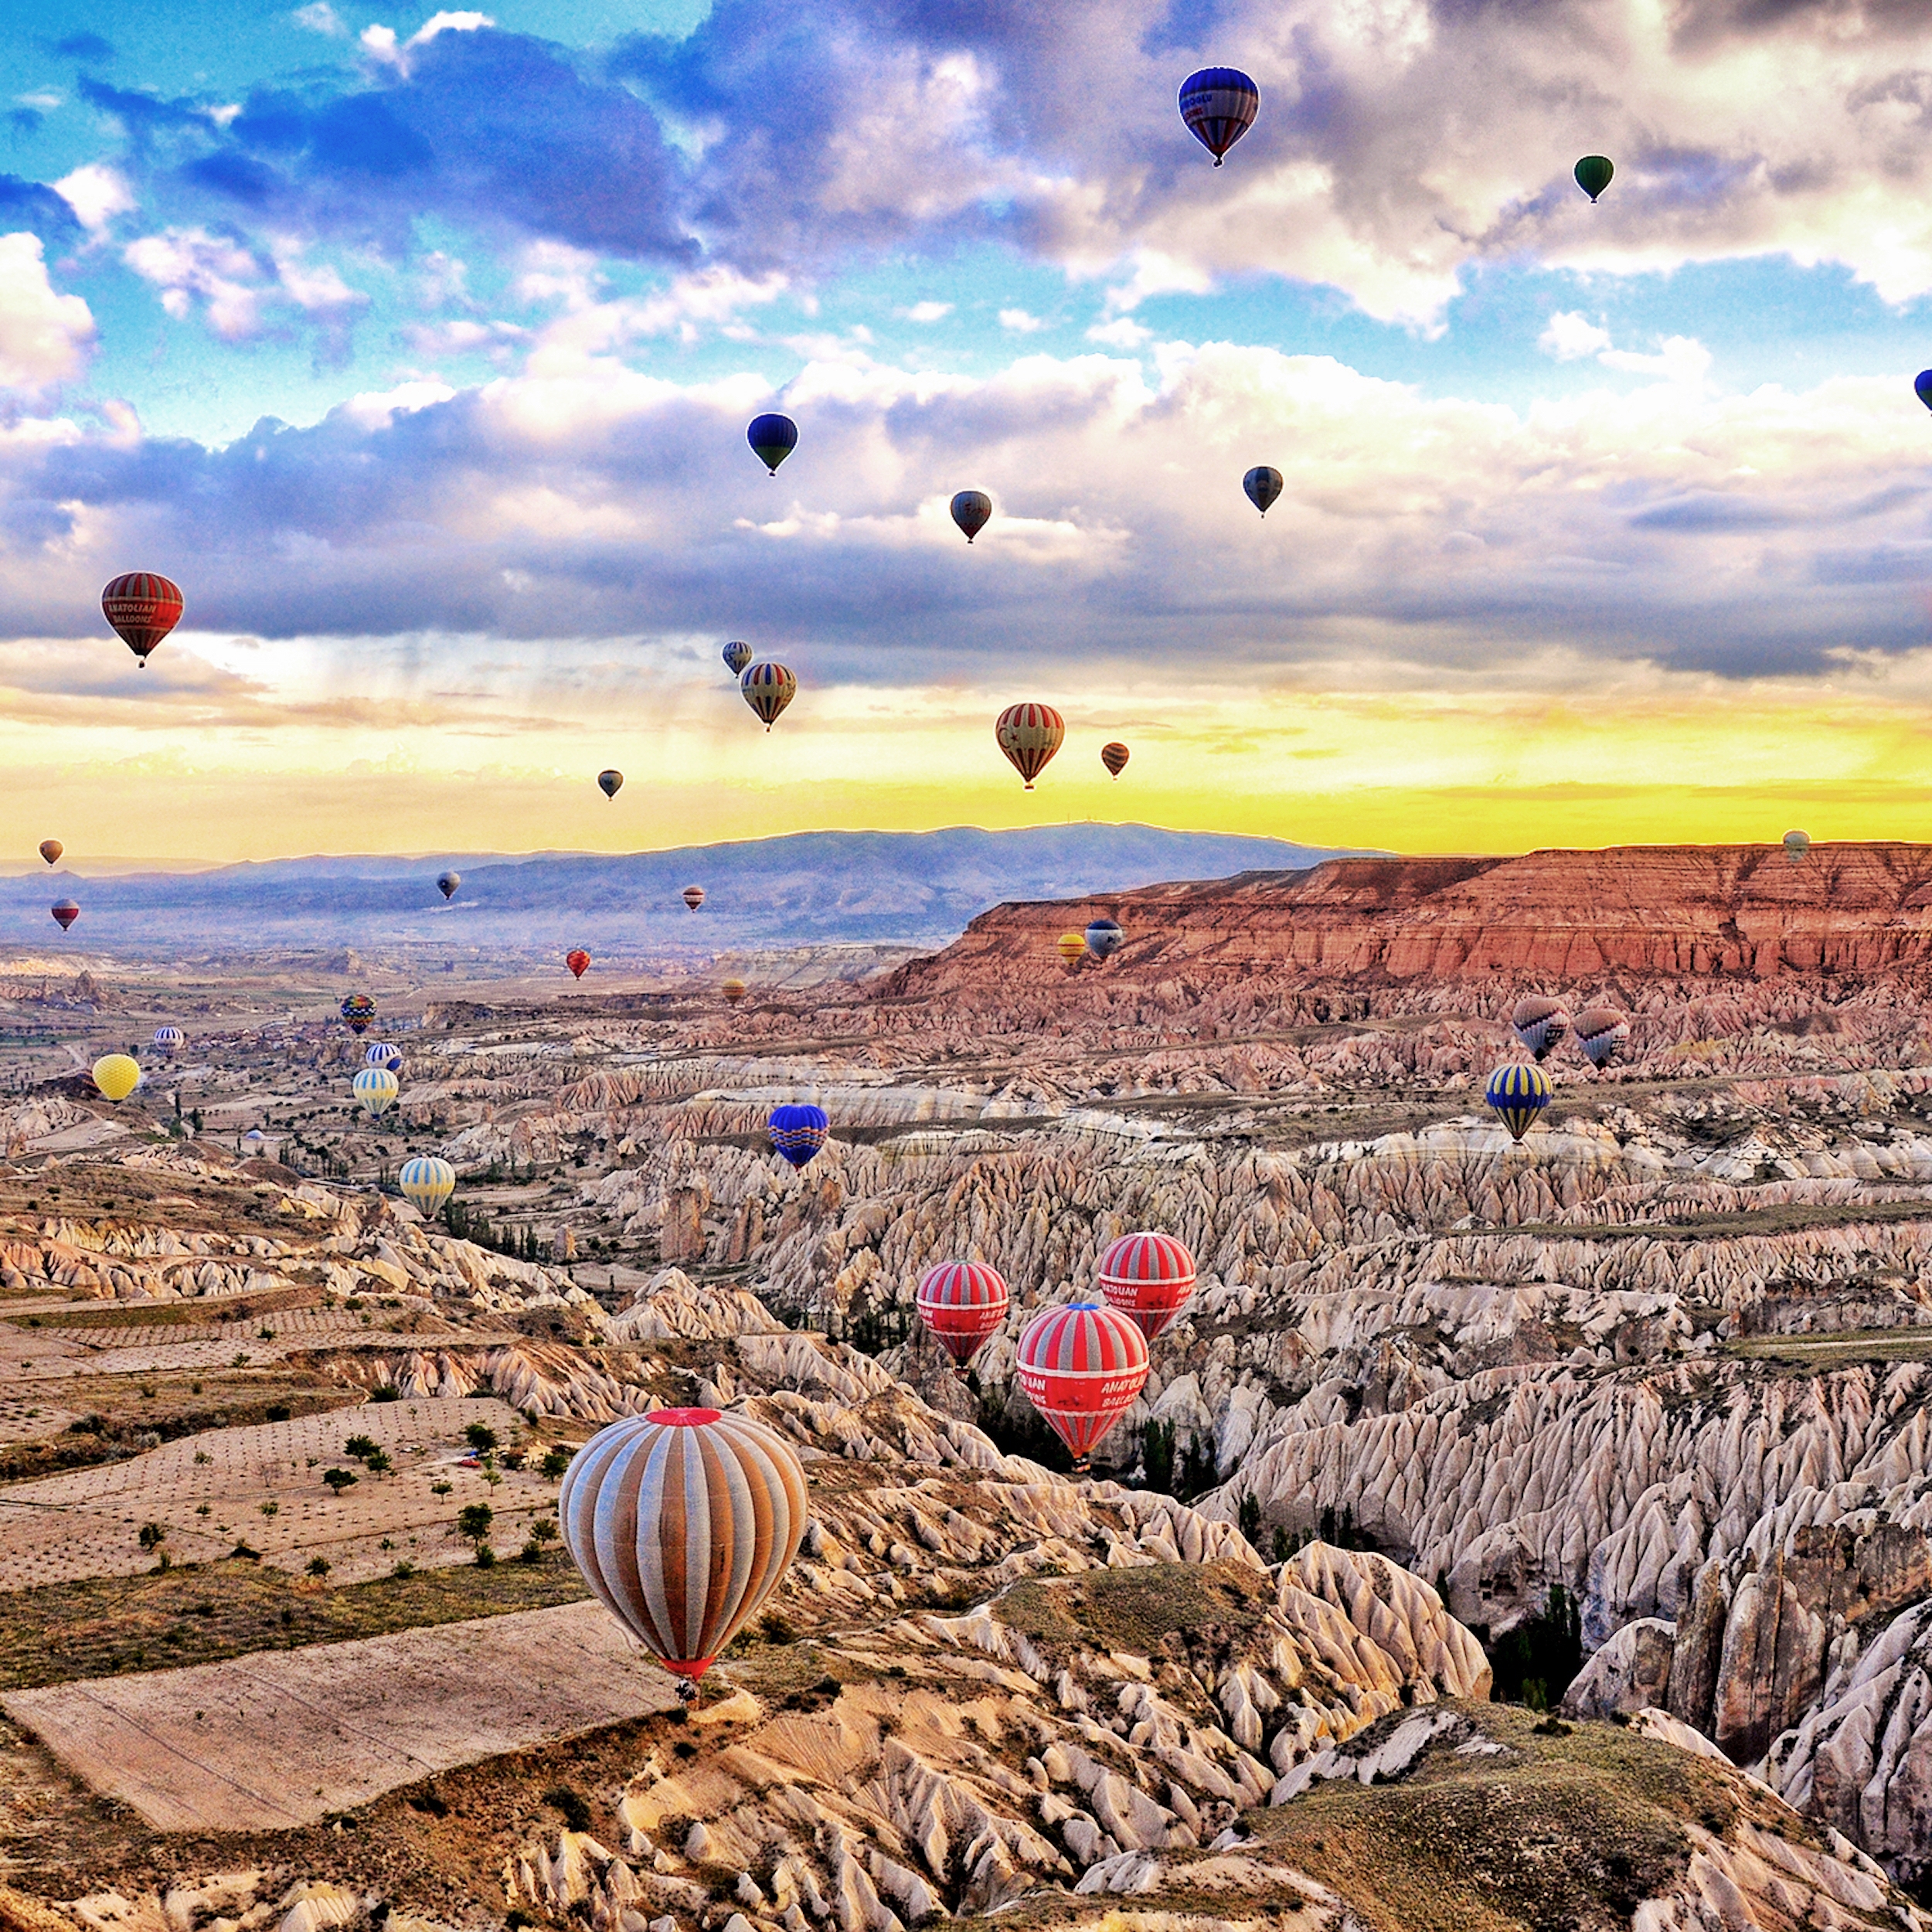 絶景 気球から見るカッパドキア カッパドキア トルコ のお得なオプショナルツアー Hisgo ロシア